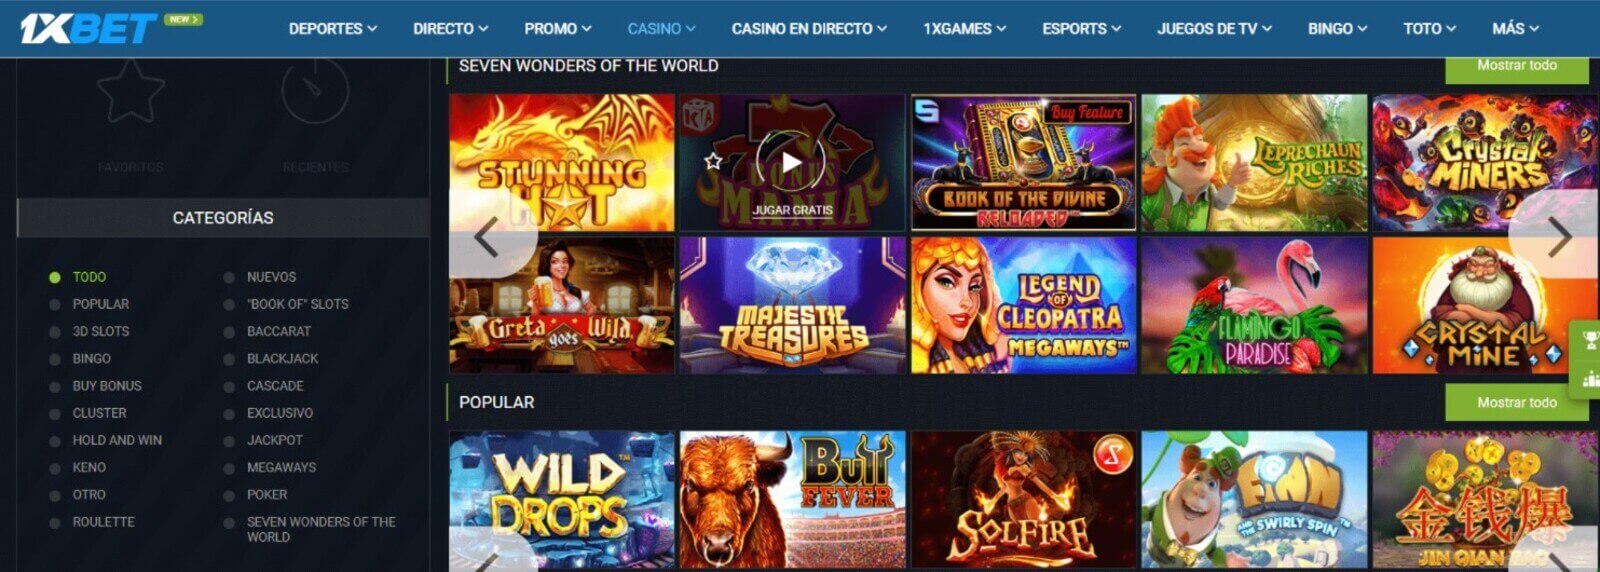 1xBet Casino online para jugar en Paraguay